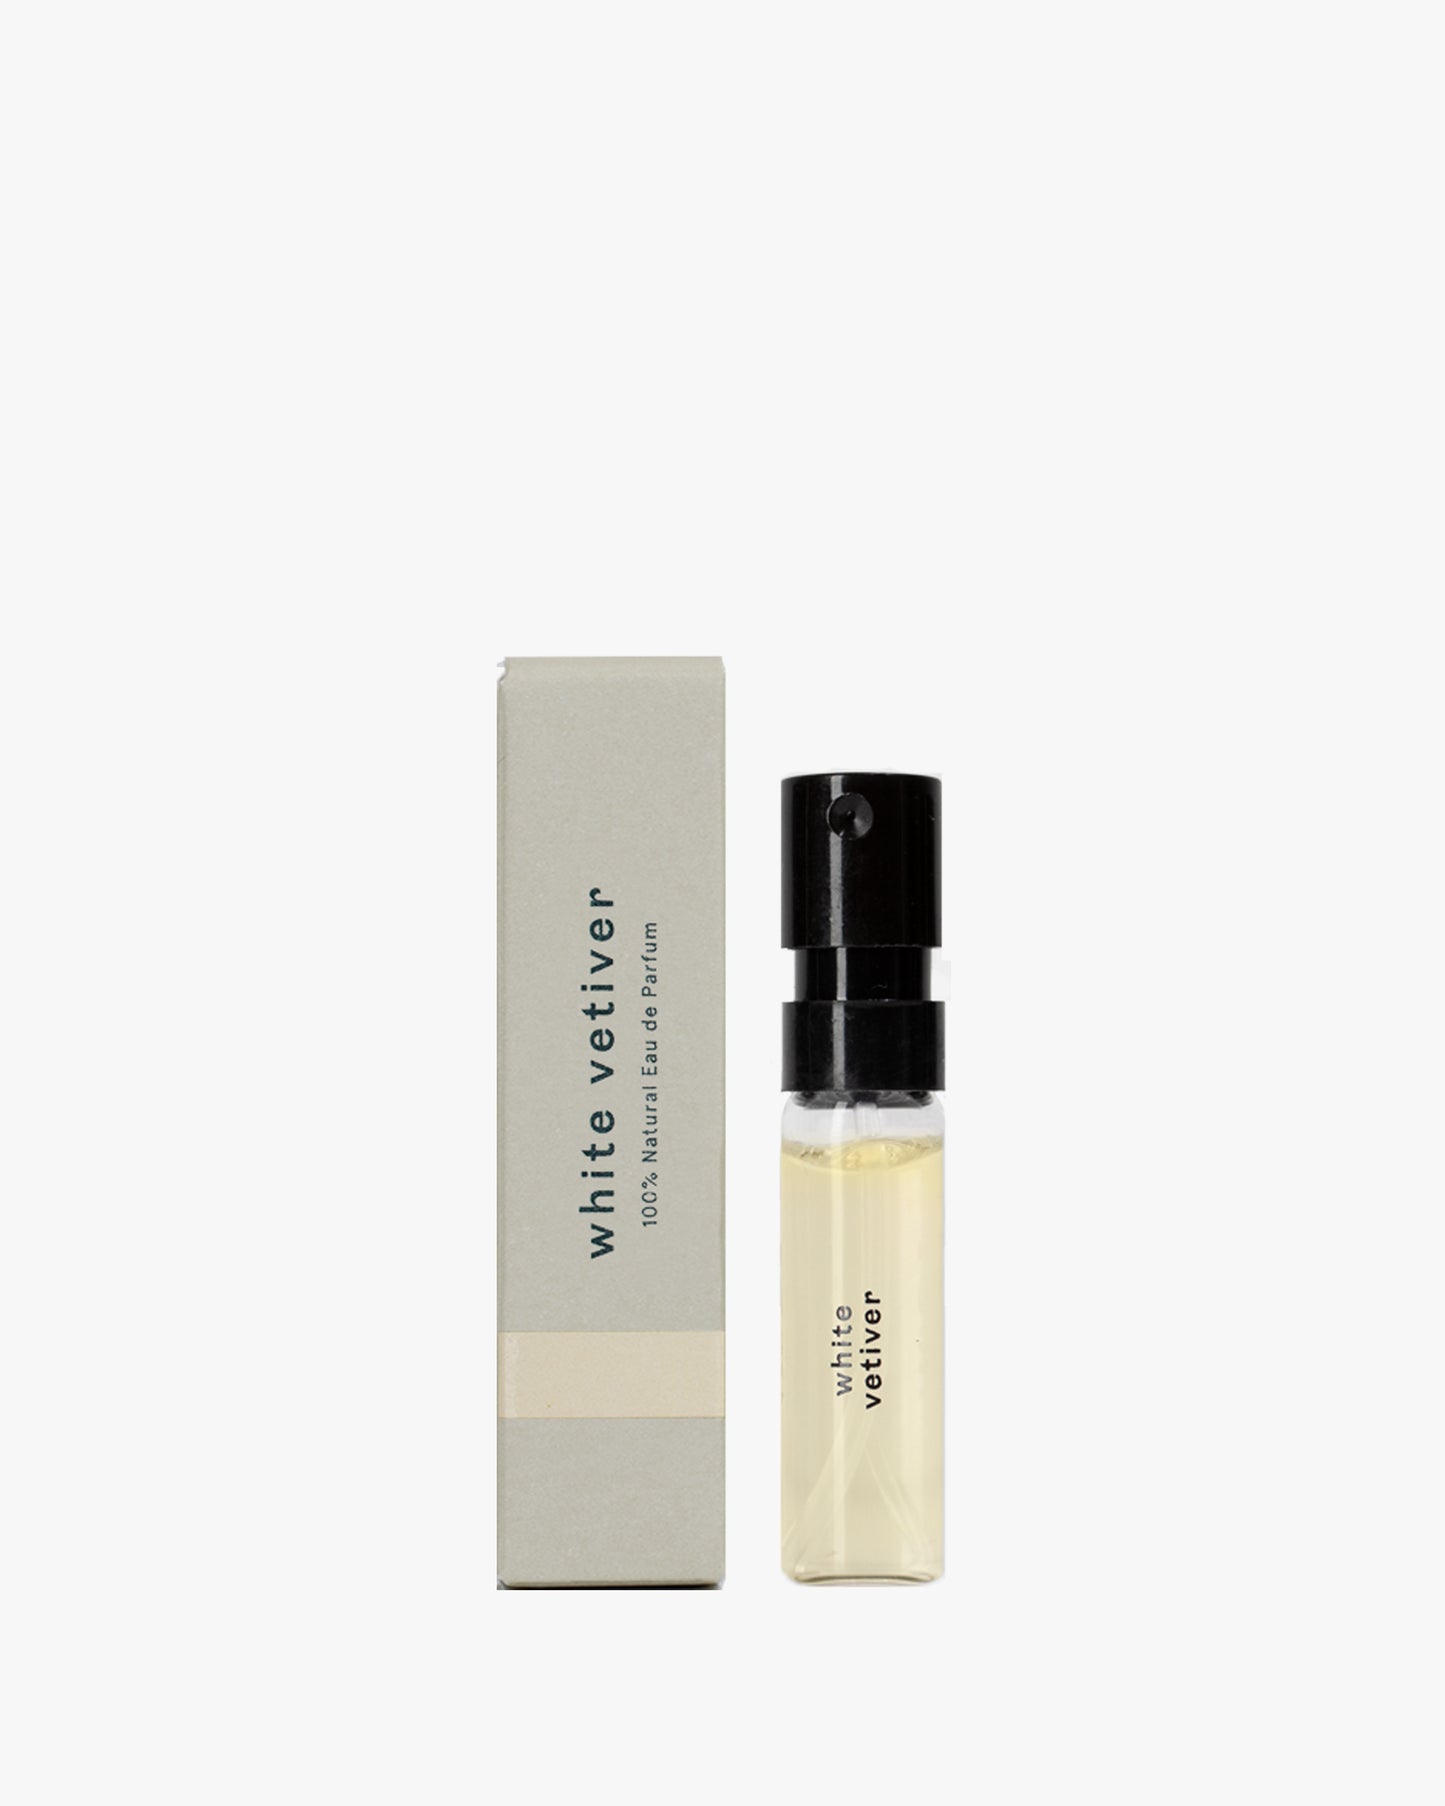 100% Natural Eau de Parfum – White Vetiver